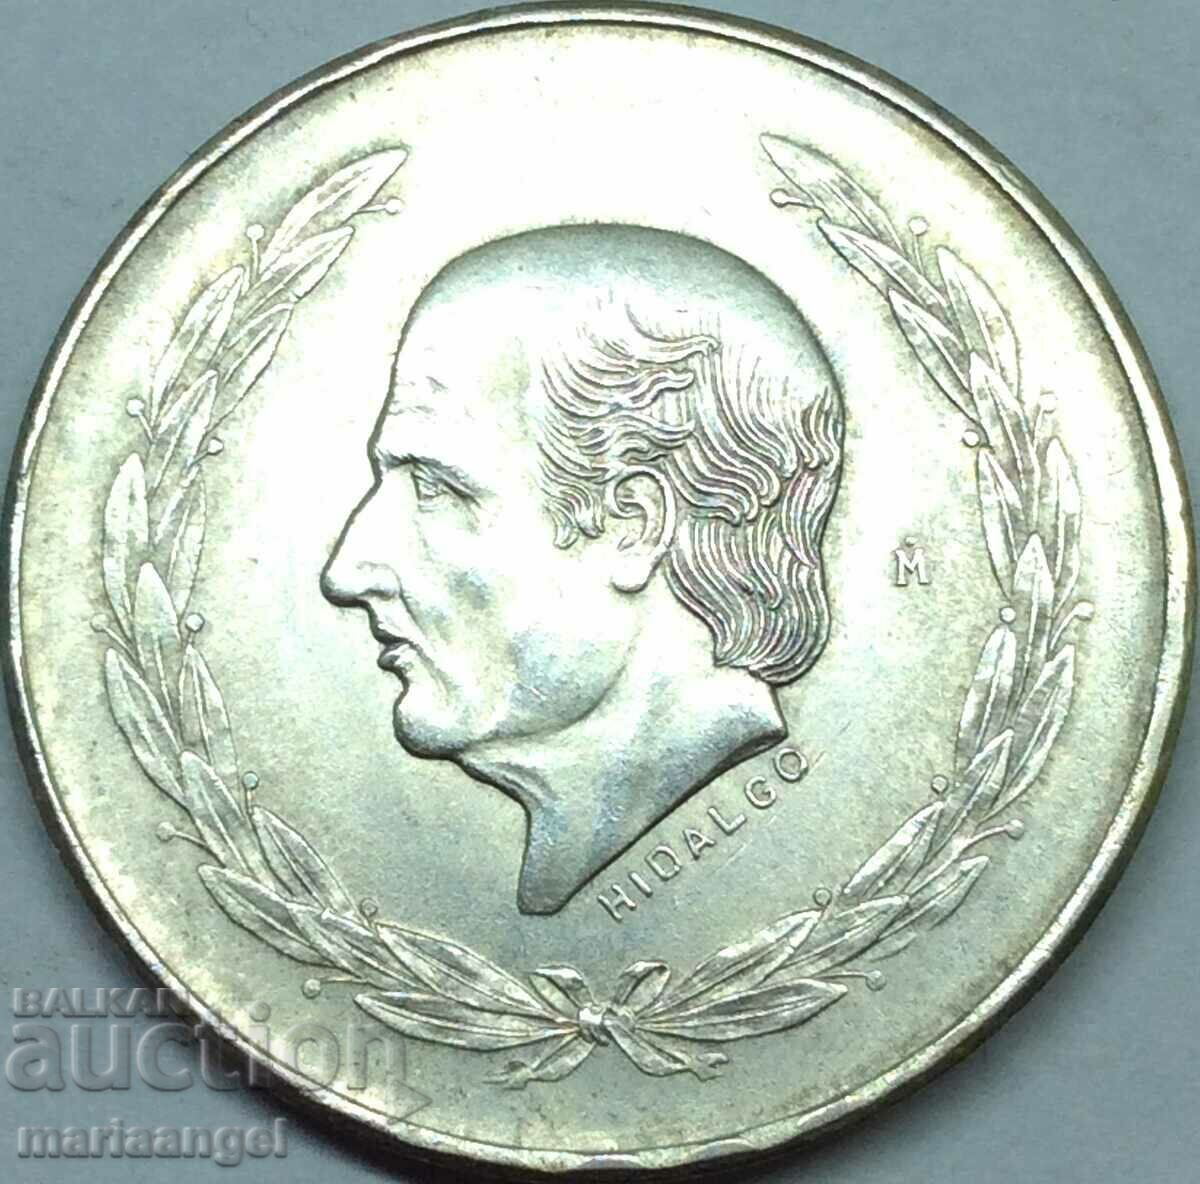 Mexic 5 pesos 1953 27,72g argint